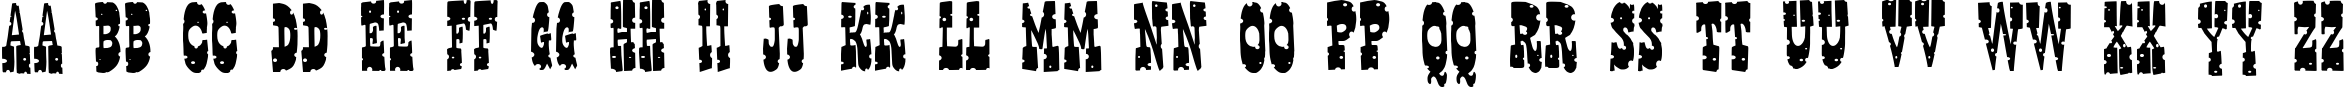 Пример написания английского алфавита шрифтом Gringo Nights